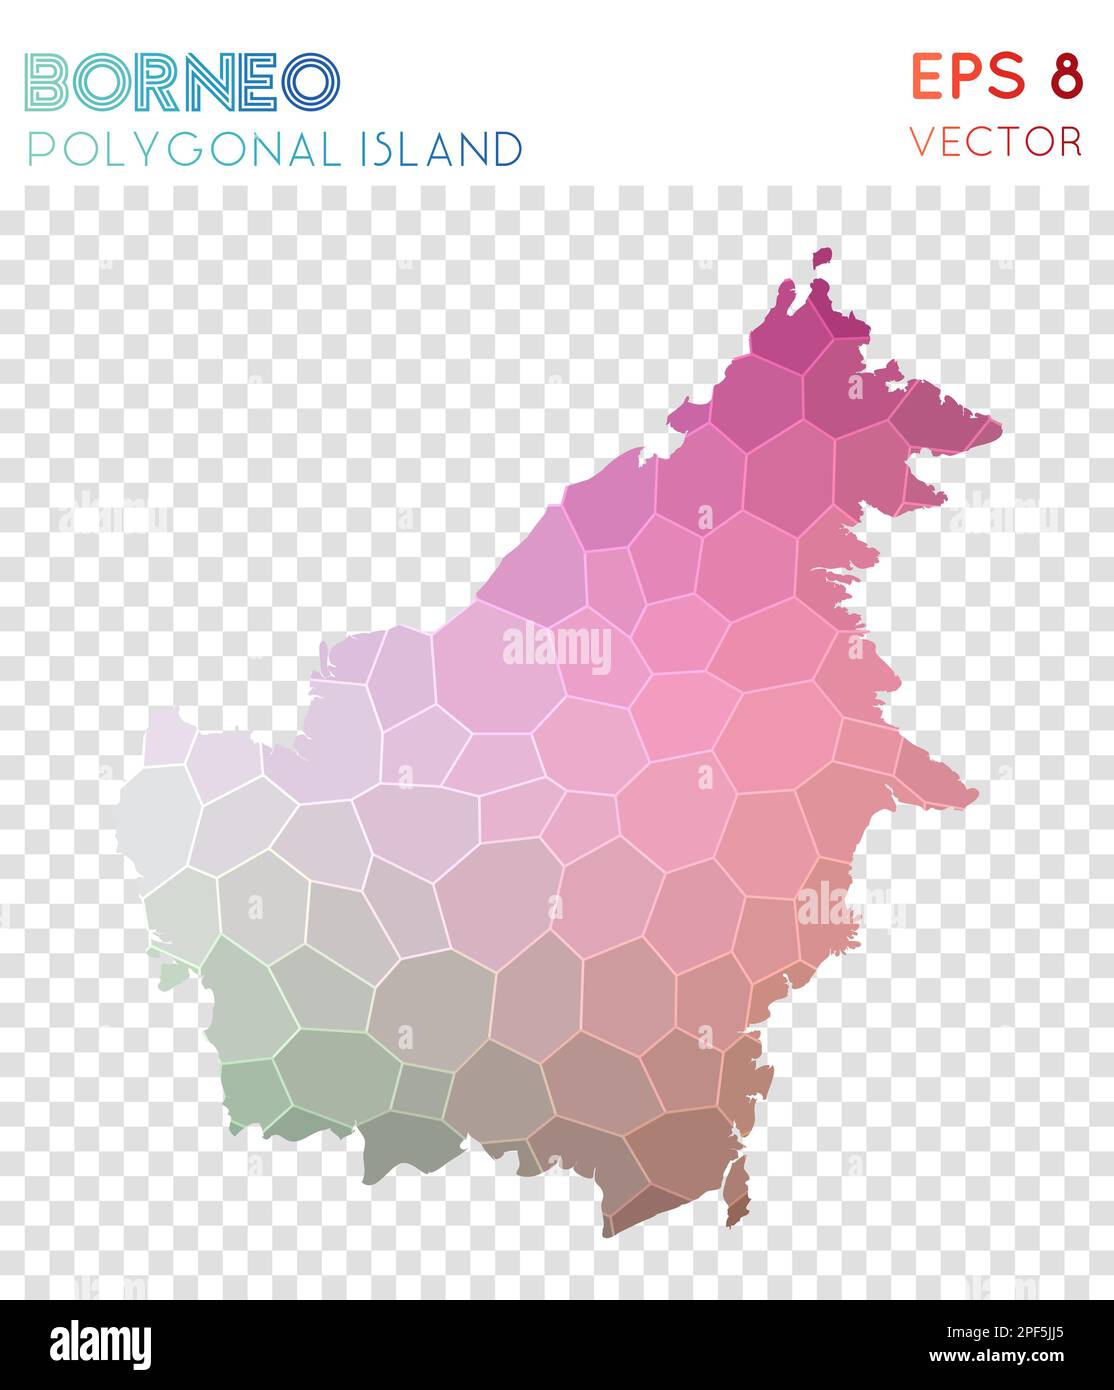 Mappa poligonale del Borneo, isola in stile mosaico. Succoso basso stile poly, design moderno. Mappa poligonale del Borneo per infografiche o presentazioni. Illustrazione Vettoriale